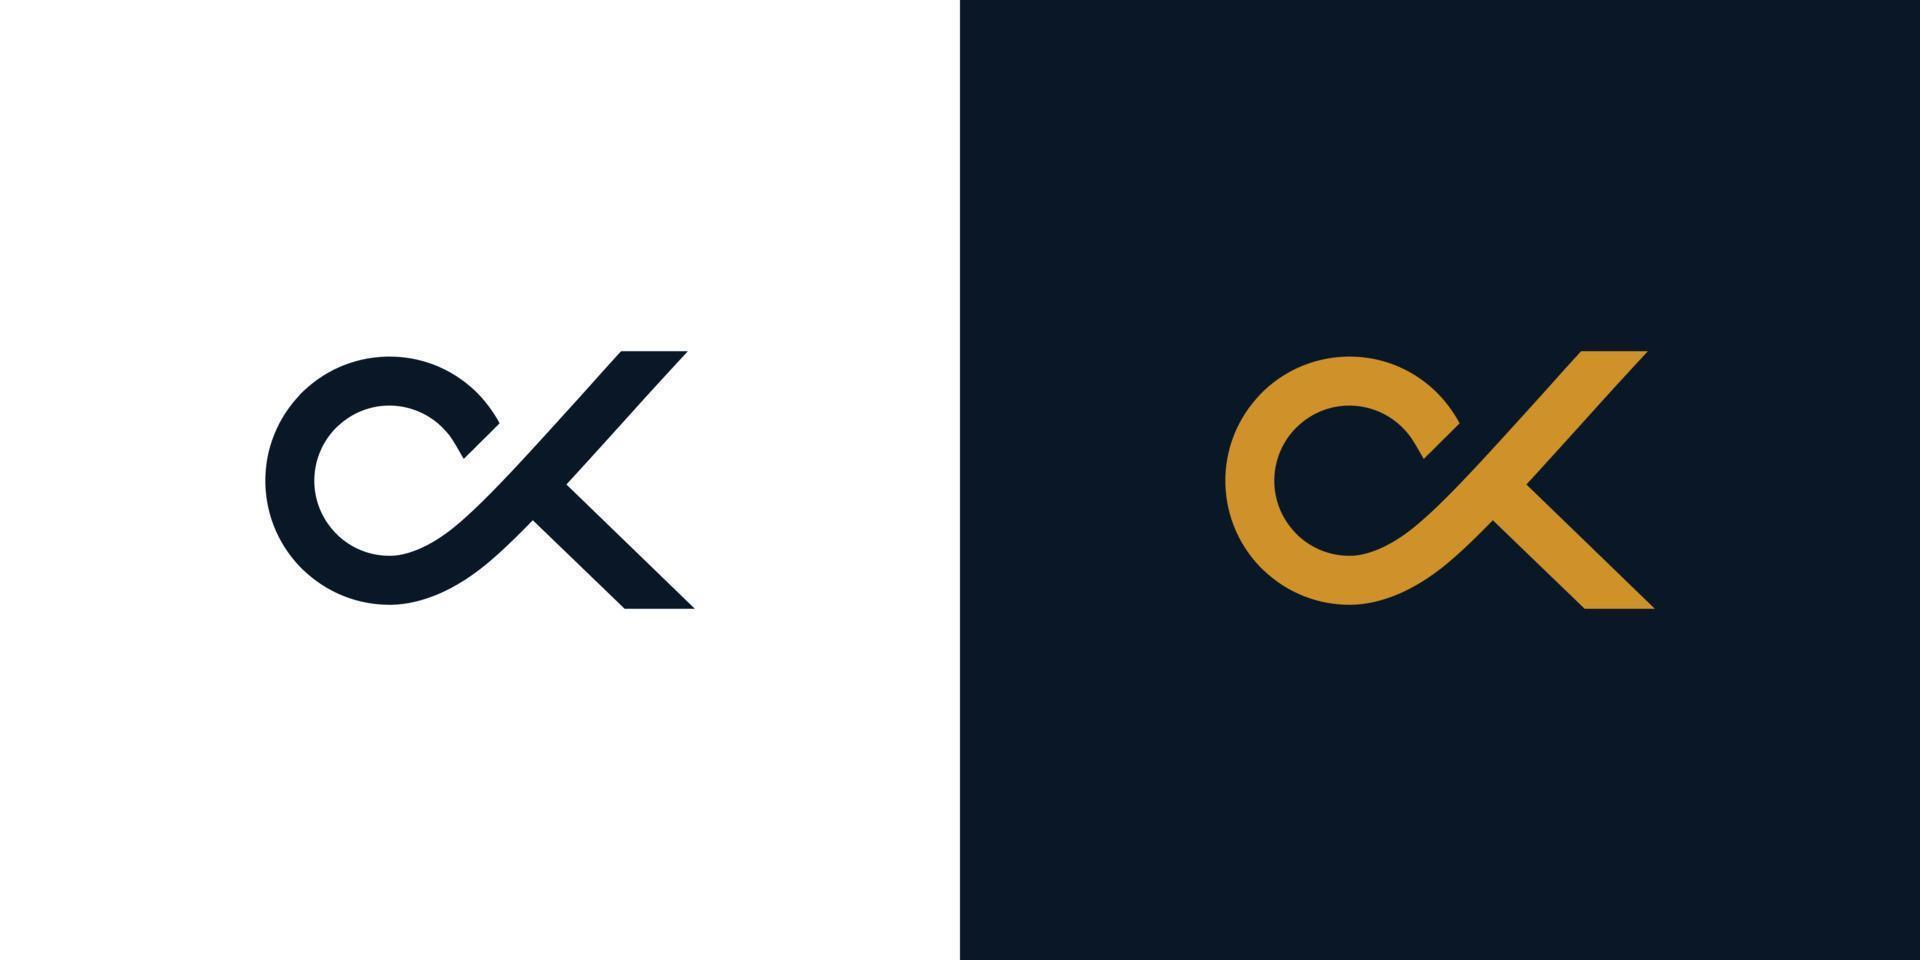 moderno y sencillo ck logo diseño vector